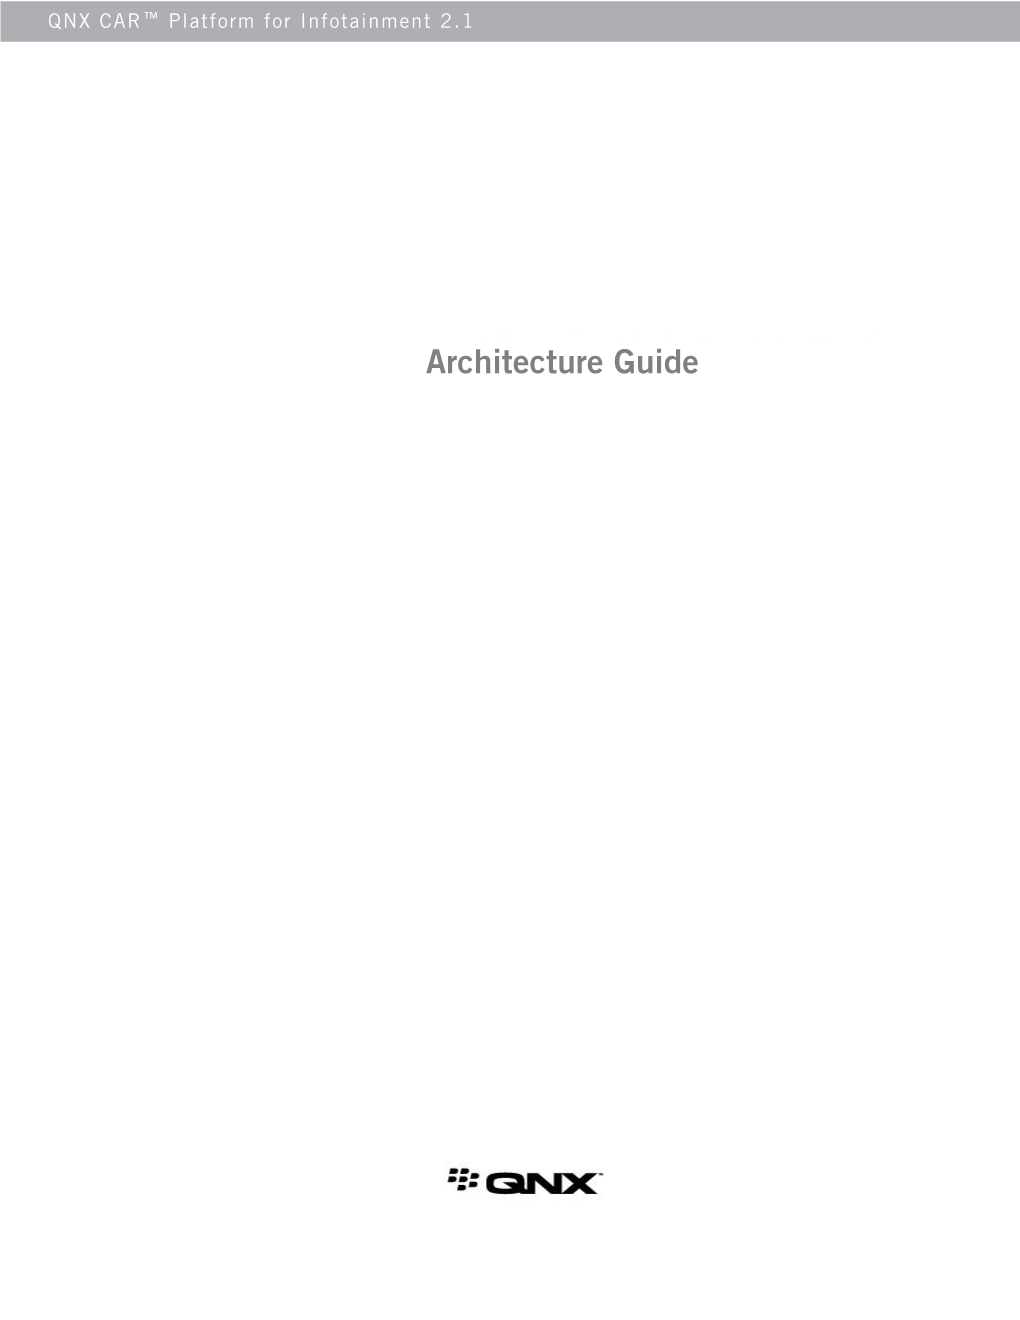 Architecture Guide